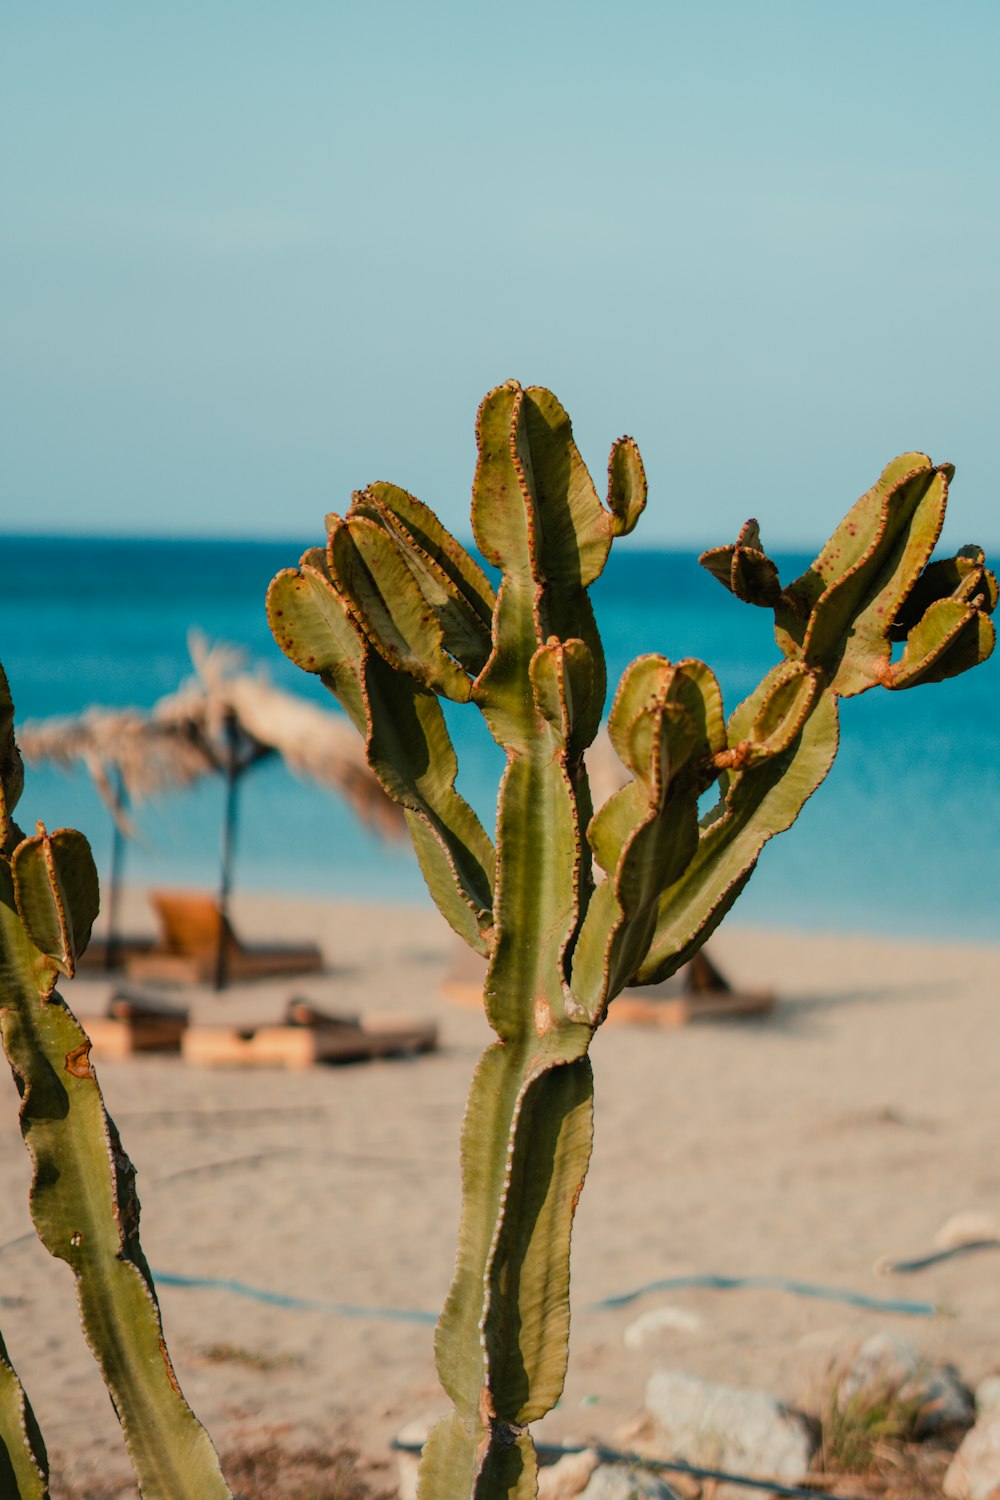 a cactus on a beach near the ocean